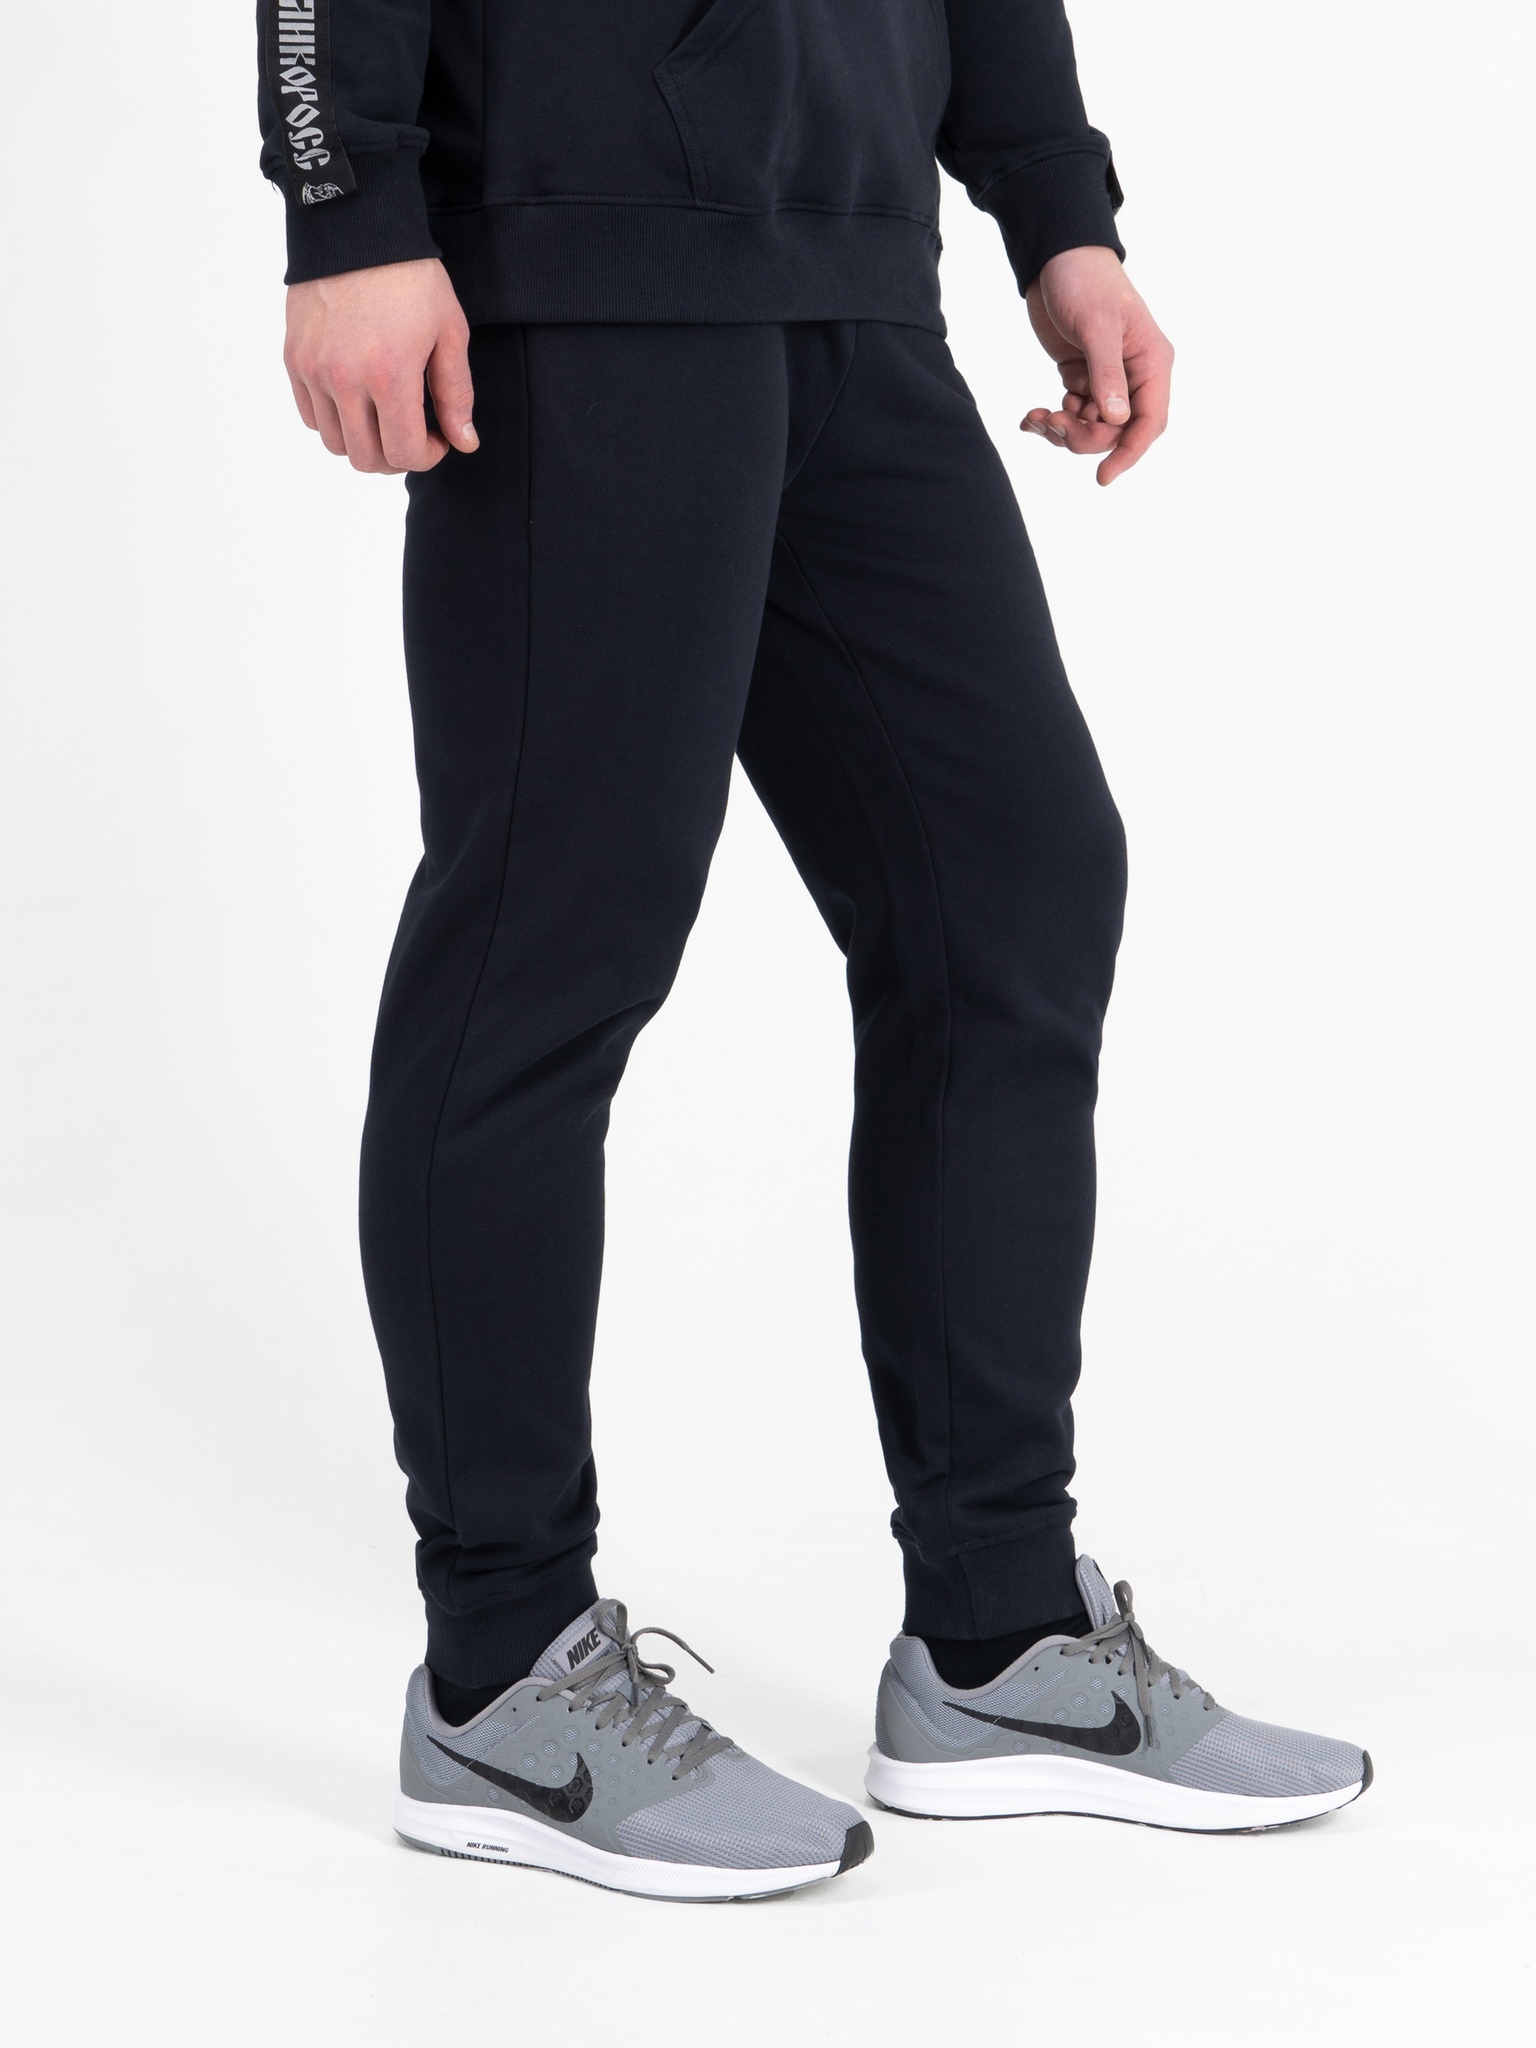 Спортивные брюки мужские Великоросс BM синие 46 RU